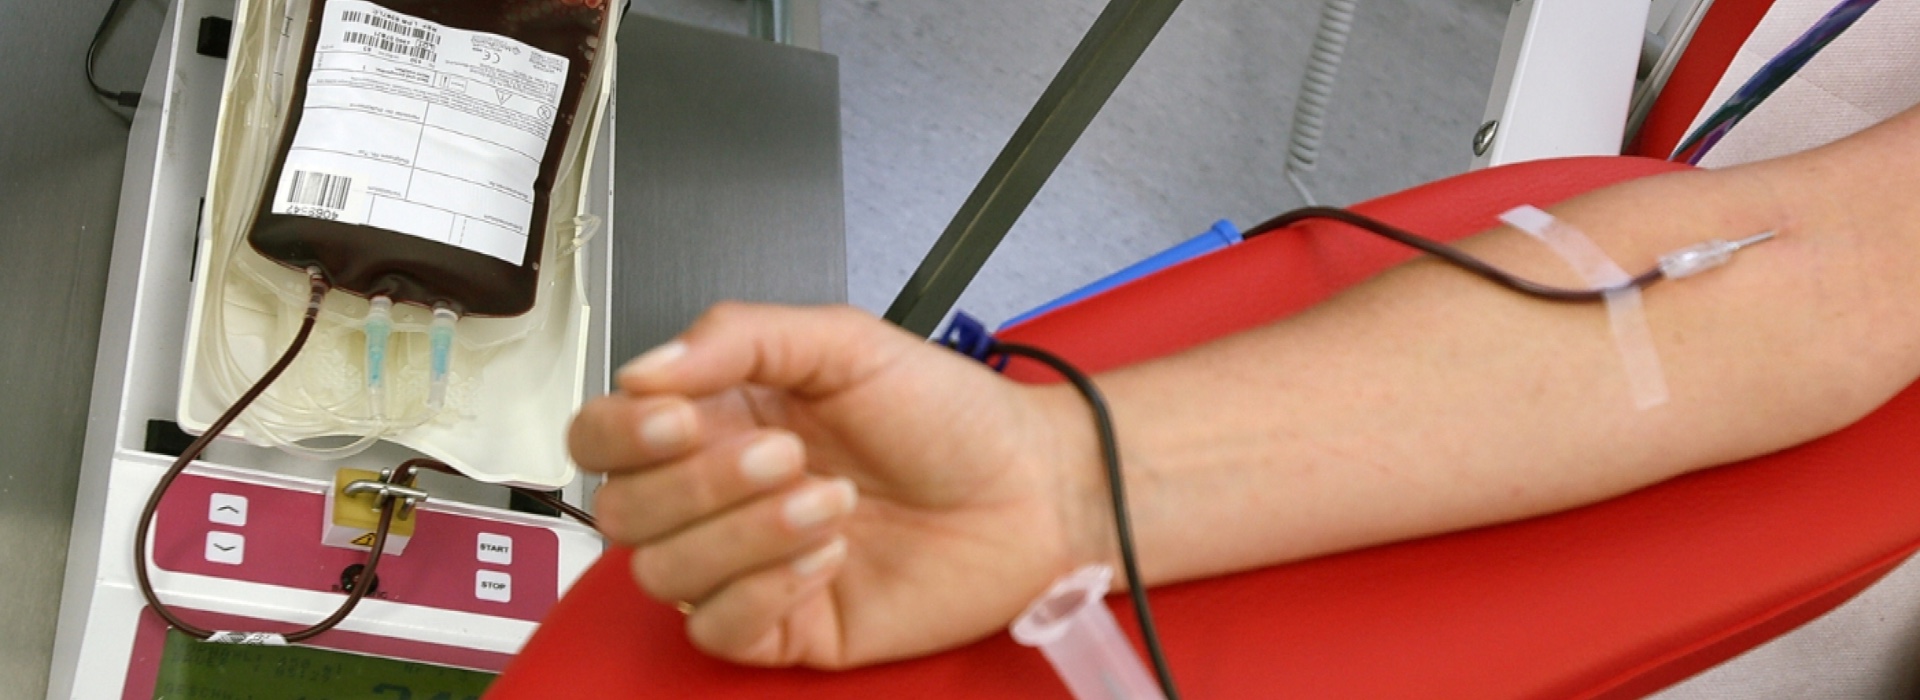 Autosufficienza sangue e plasma in Italia: sfide e prospettive future